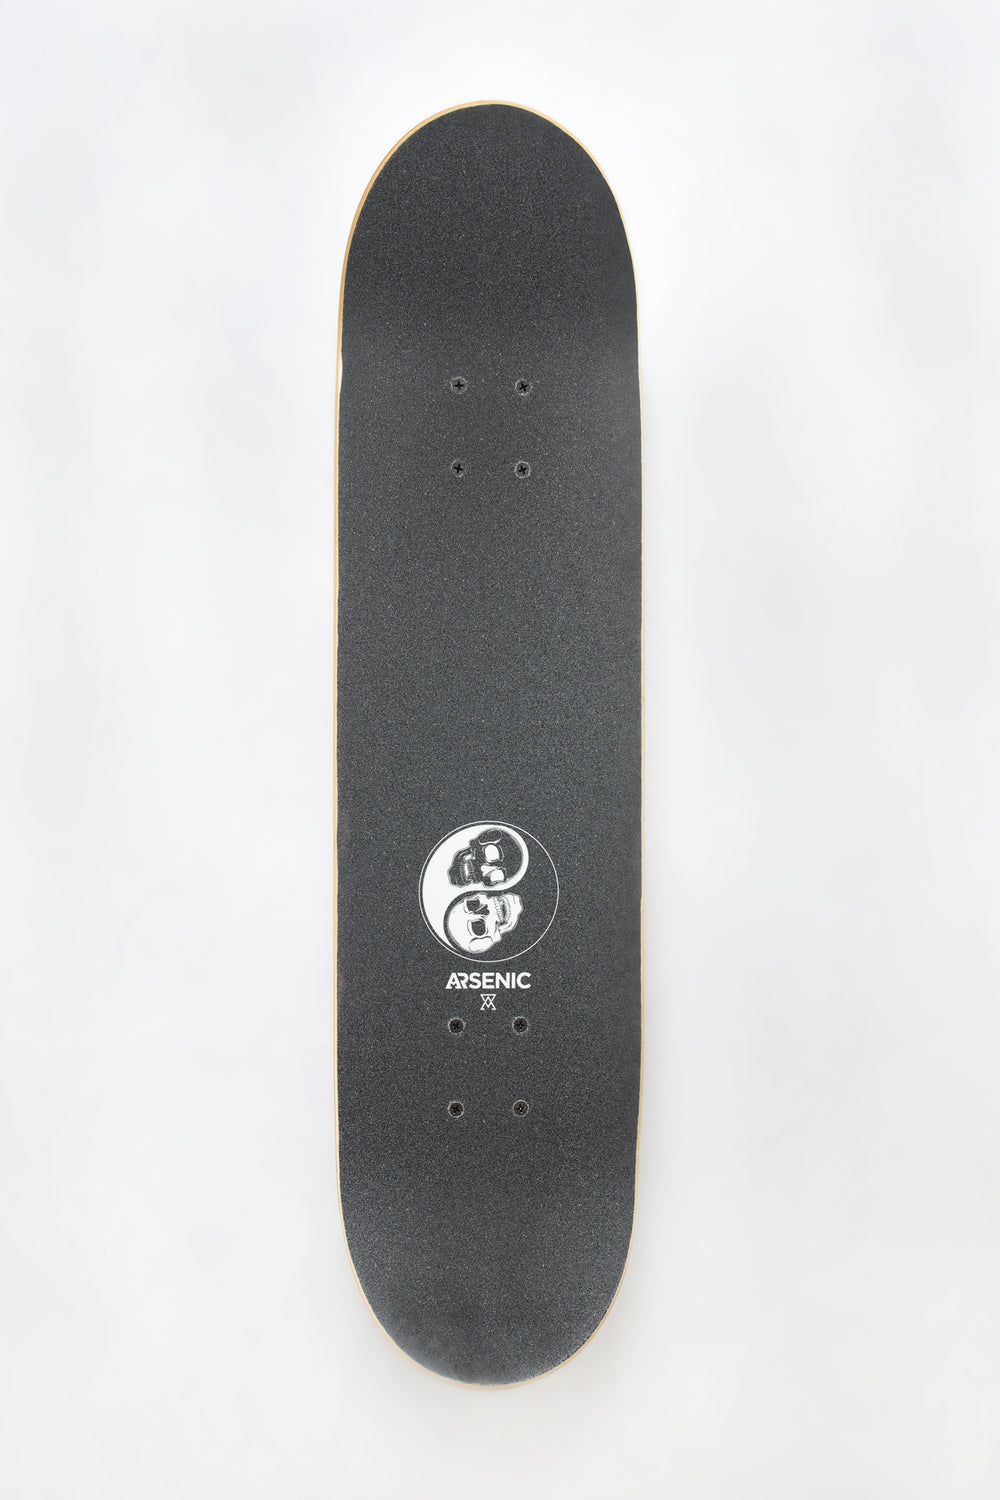 Arsenic Yin Yang Skateboard 7.75